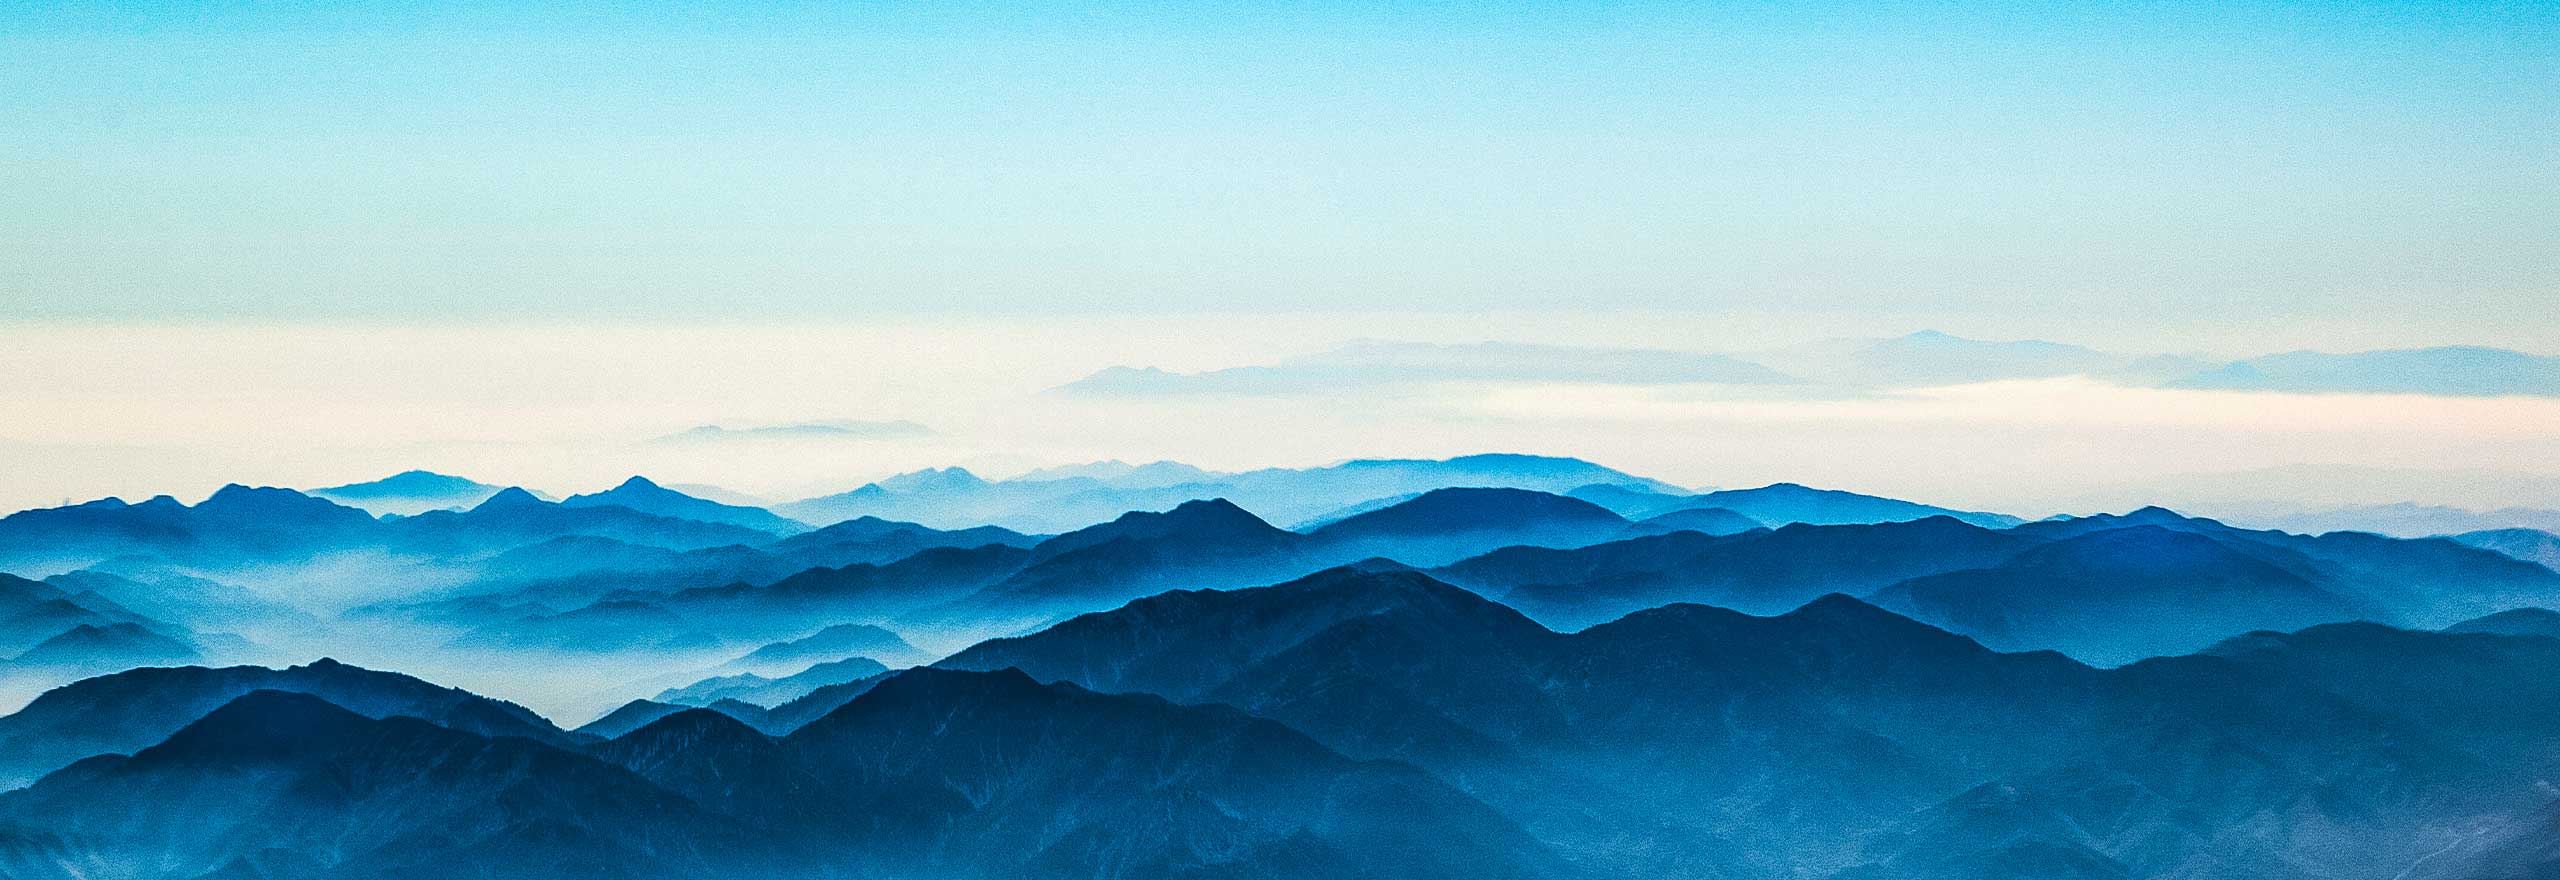 Uma visão aérea de neblina se dissipando de uma cadeia de montanhas.